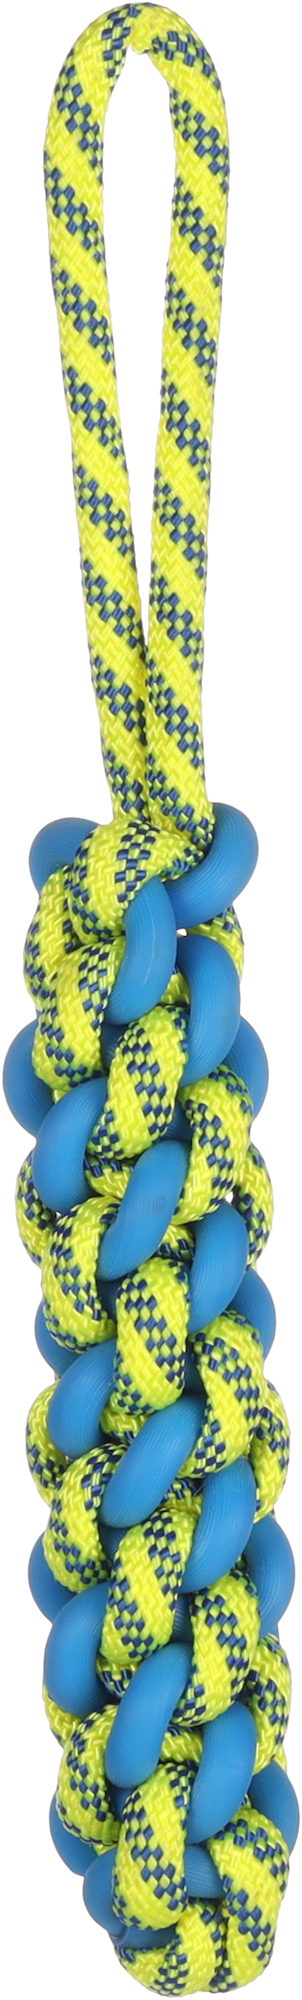 Brinquedo para cachorro Tofla bastão para puxar azul/amarelo de borracha e nylon resistente